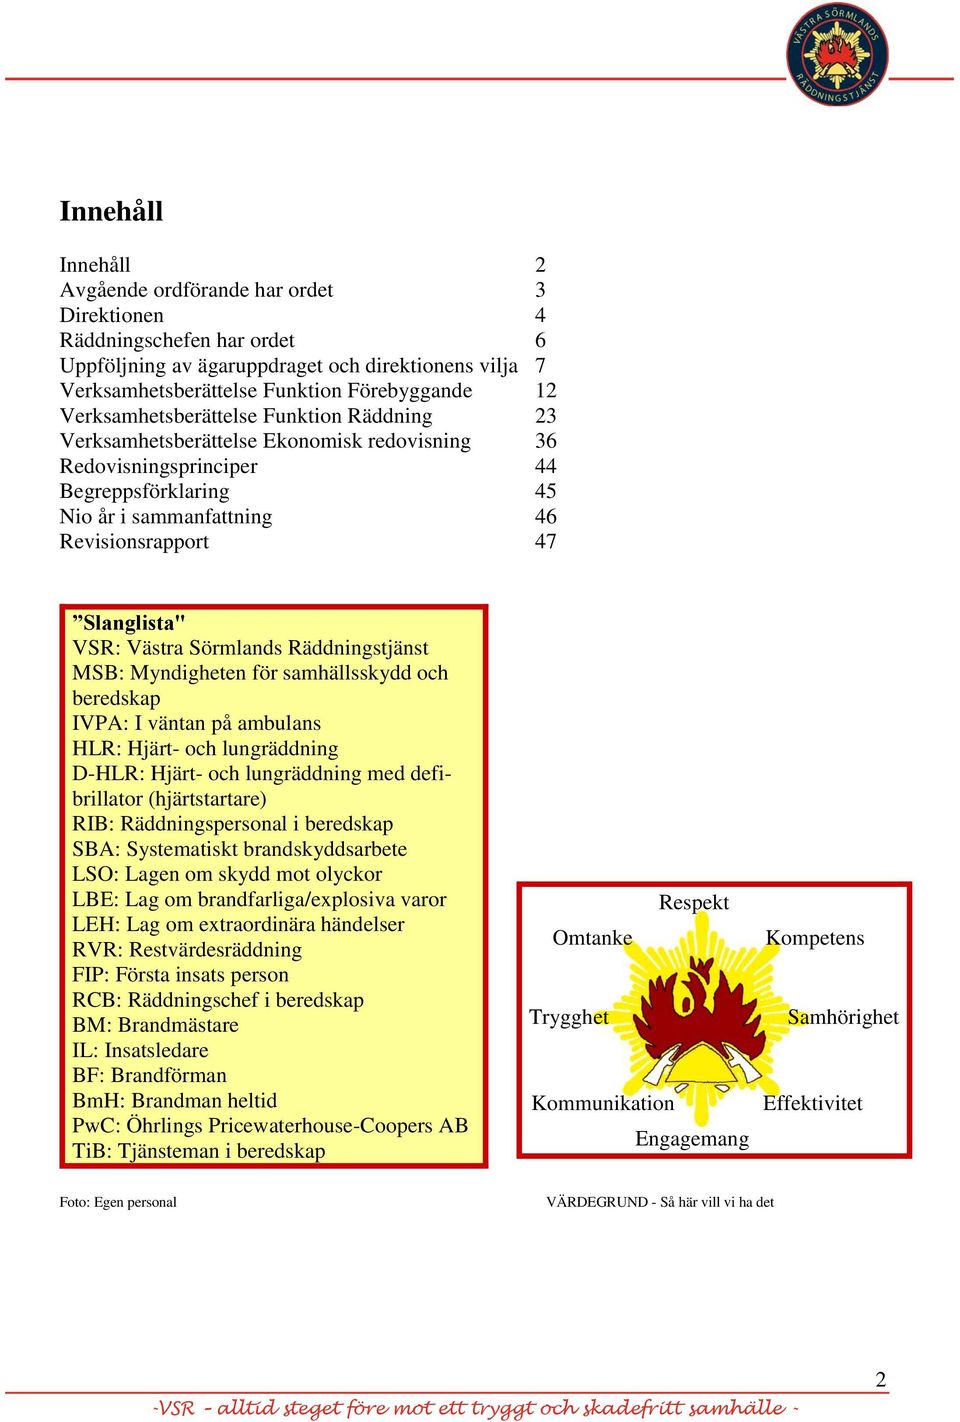 VSR: Västra Sörmlands Räddningstjänst MSB: Myndigheten för samhällsskydd och beredskap IVPA: I väntan på ambulans HLR: Hjärt- och lungräddning D-HLR: Hjärt- och lungräddning med defibrillator